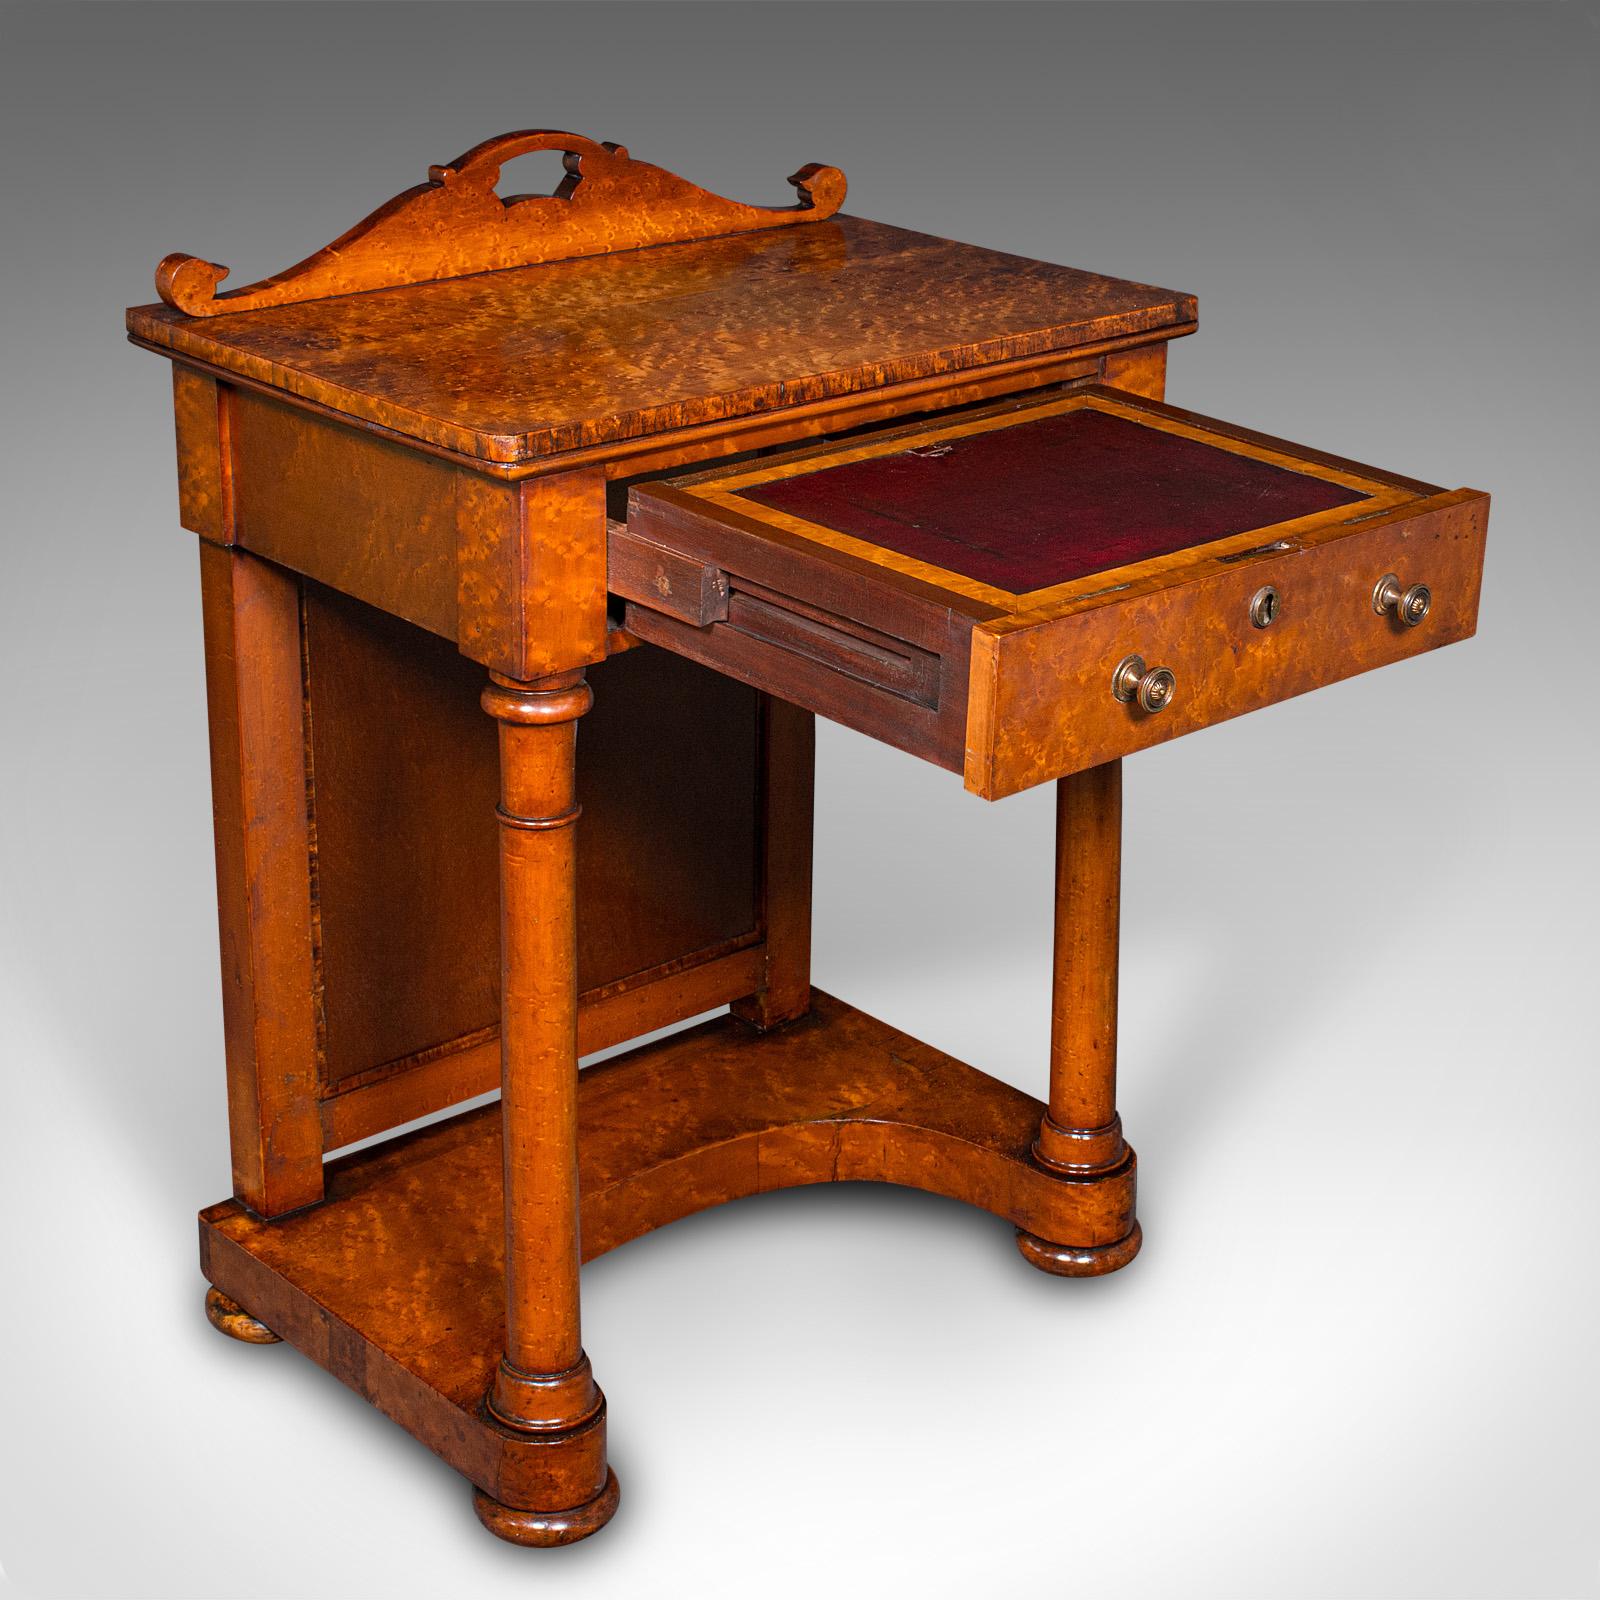 Dies ist ein antiker Schreibtisch für den Zahlmeister eines Schiffes. Ein englischer Davenport-Schreibtisch aus Wurzelholz im Beidermeier-Stil aus der viktorianischen Zeit, um 1880.

Exquisite Handwerkskunst mit hervorragender Farbe und